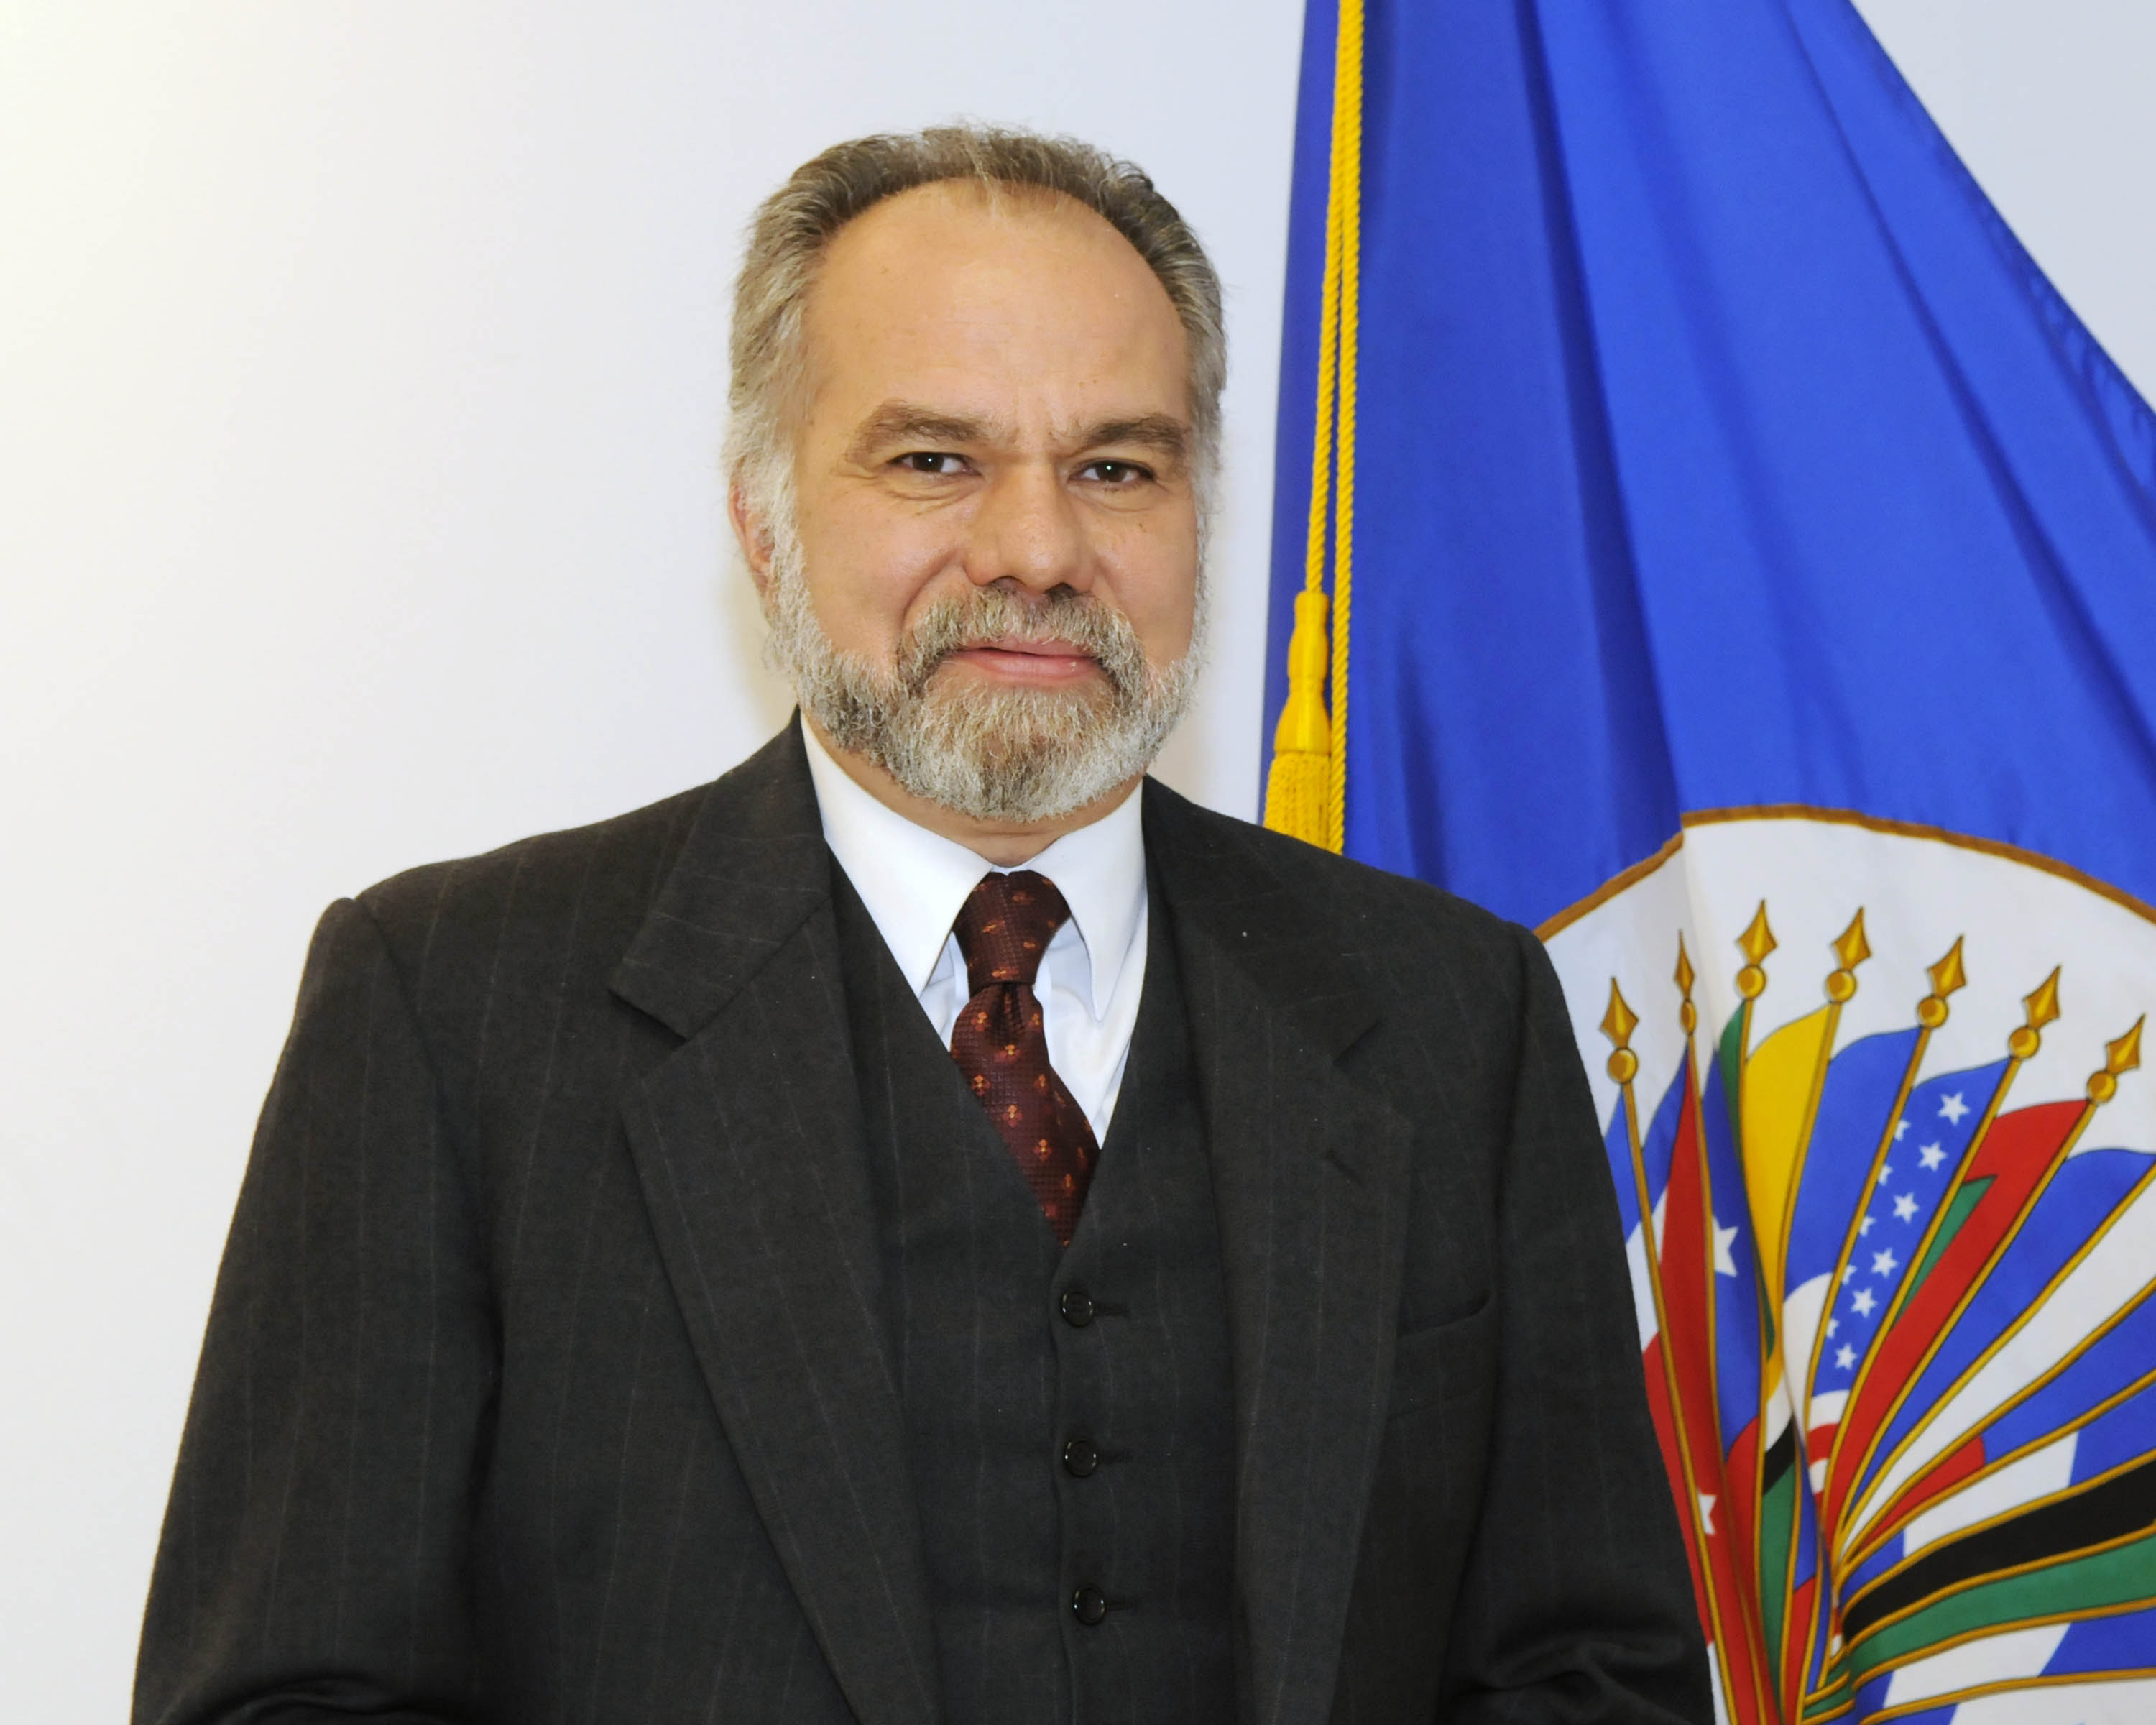 Comisionado José de Jesús Orozco Henríquez, Relator de la CIDH para defensores de DDHH